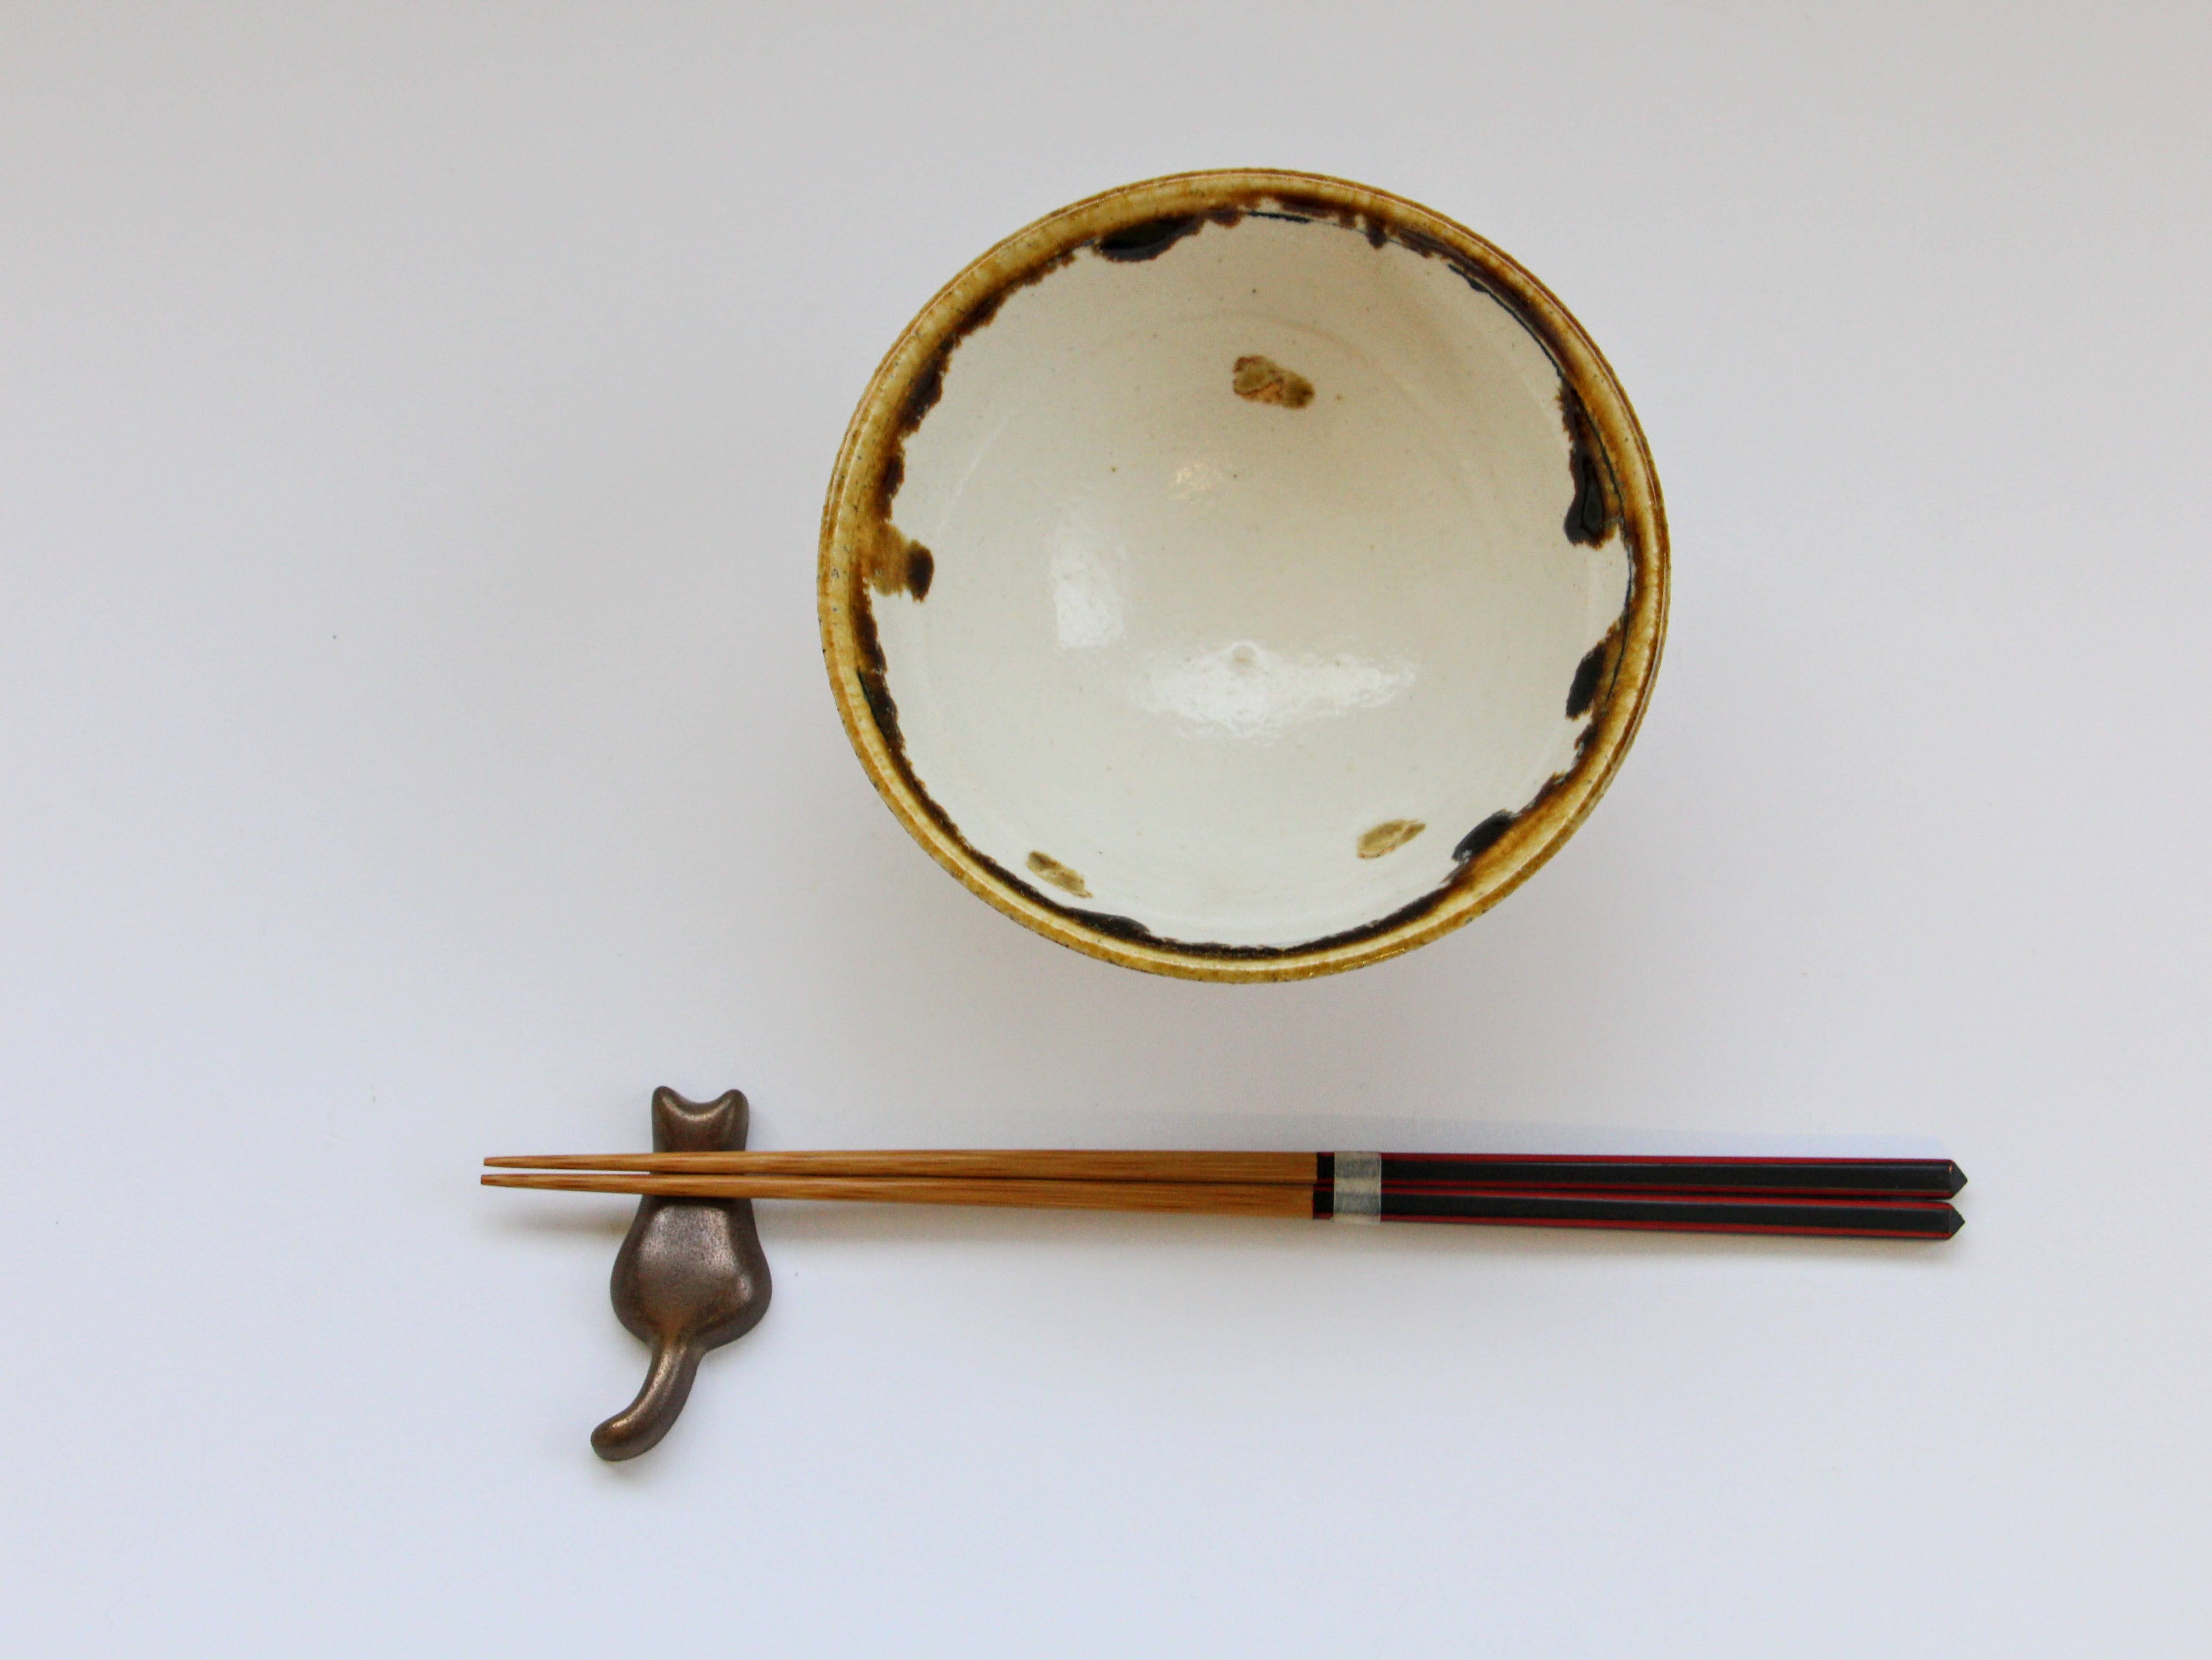 Rice bowl with white makeup lines and yellow dots [Kazuhito Yamamoto]